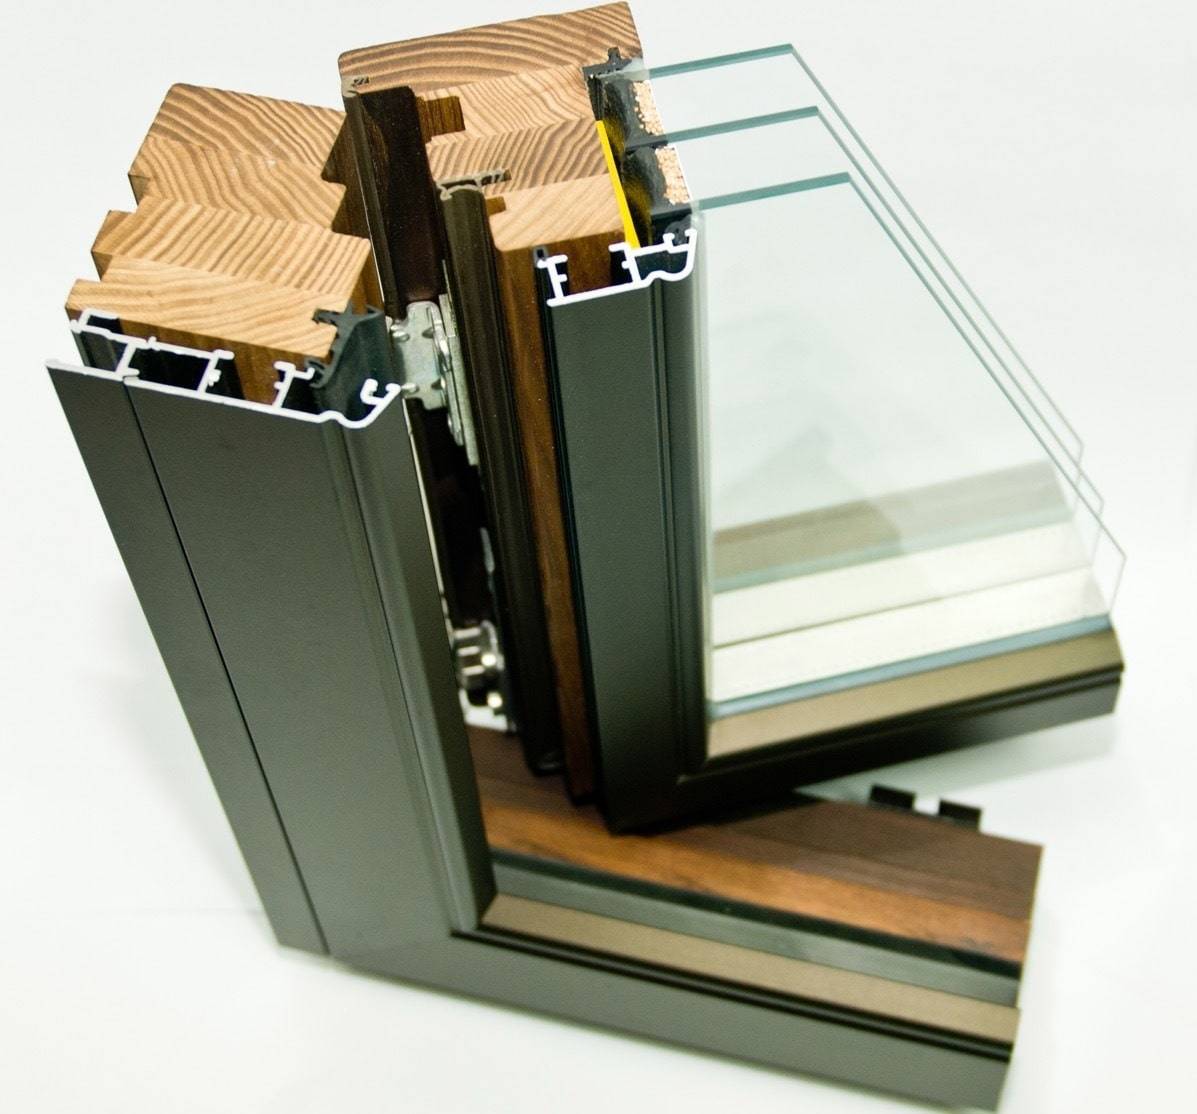 Алюминиево-деревянные окна, плюсы и минусы алюмодеревянных окон, срок службы алюмодеревянных окон